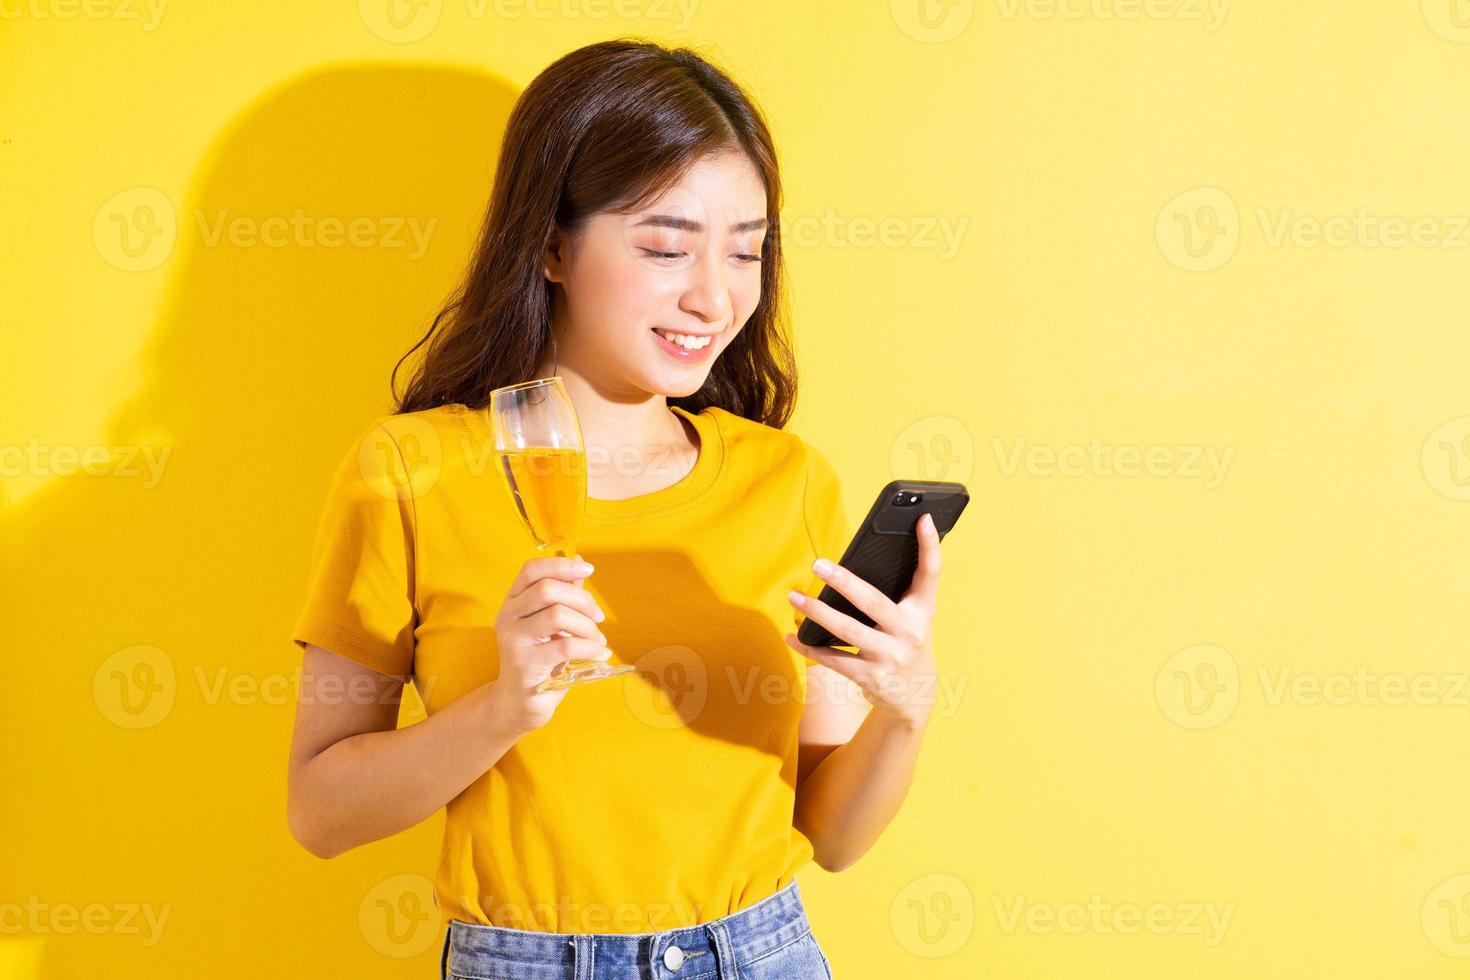 jonge Aziatische vrouw die wijn drinkt en zich voordeed op gele achtergrond foto